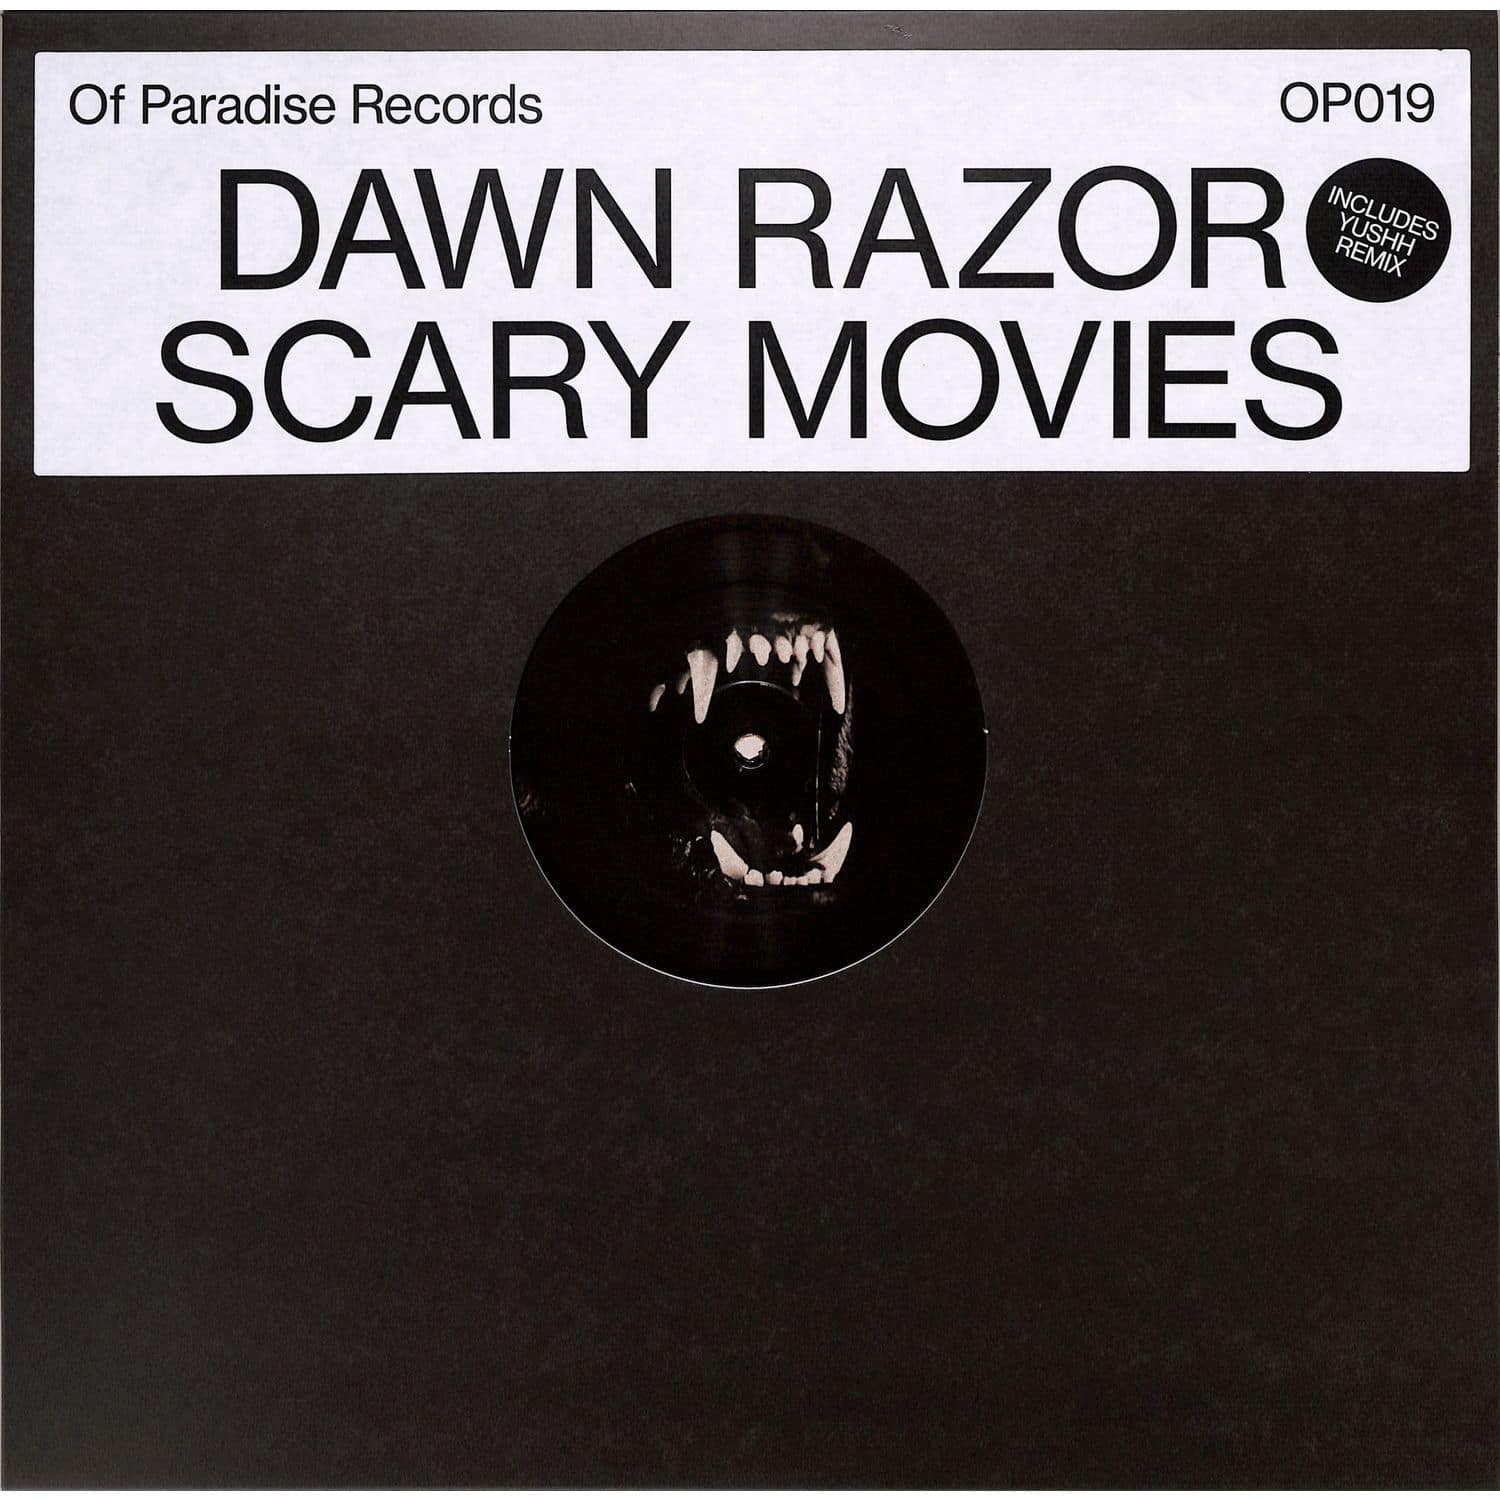 Dawn Razor - SCARY MOVIES